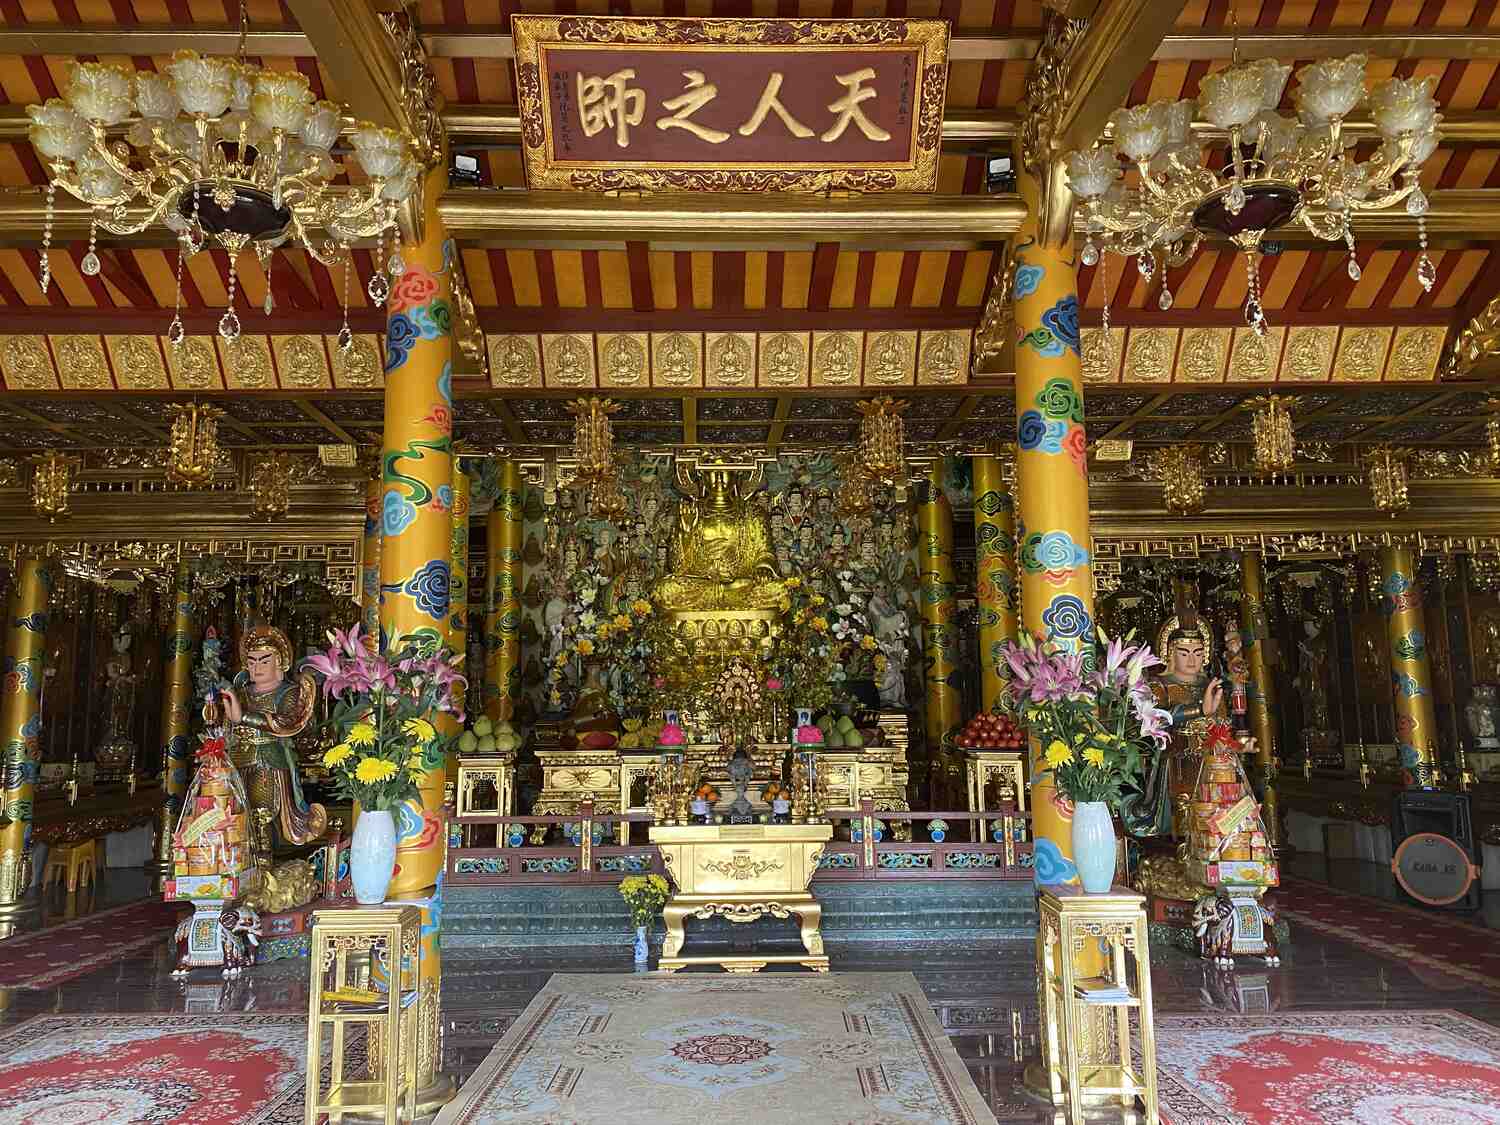 Inside-An-Long-Temple-in-Da-Nang